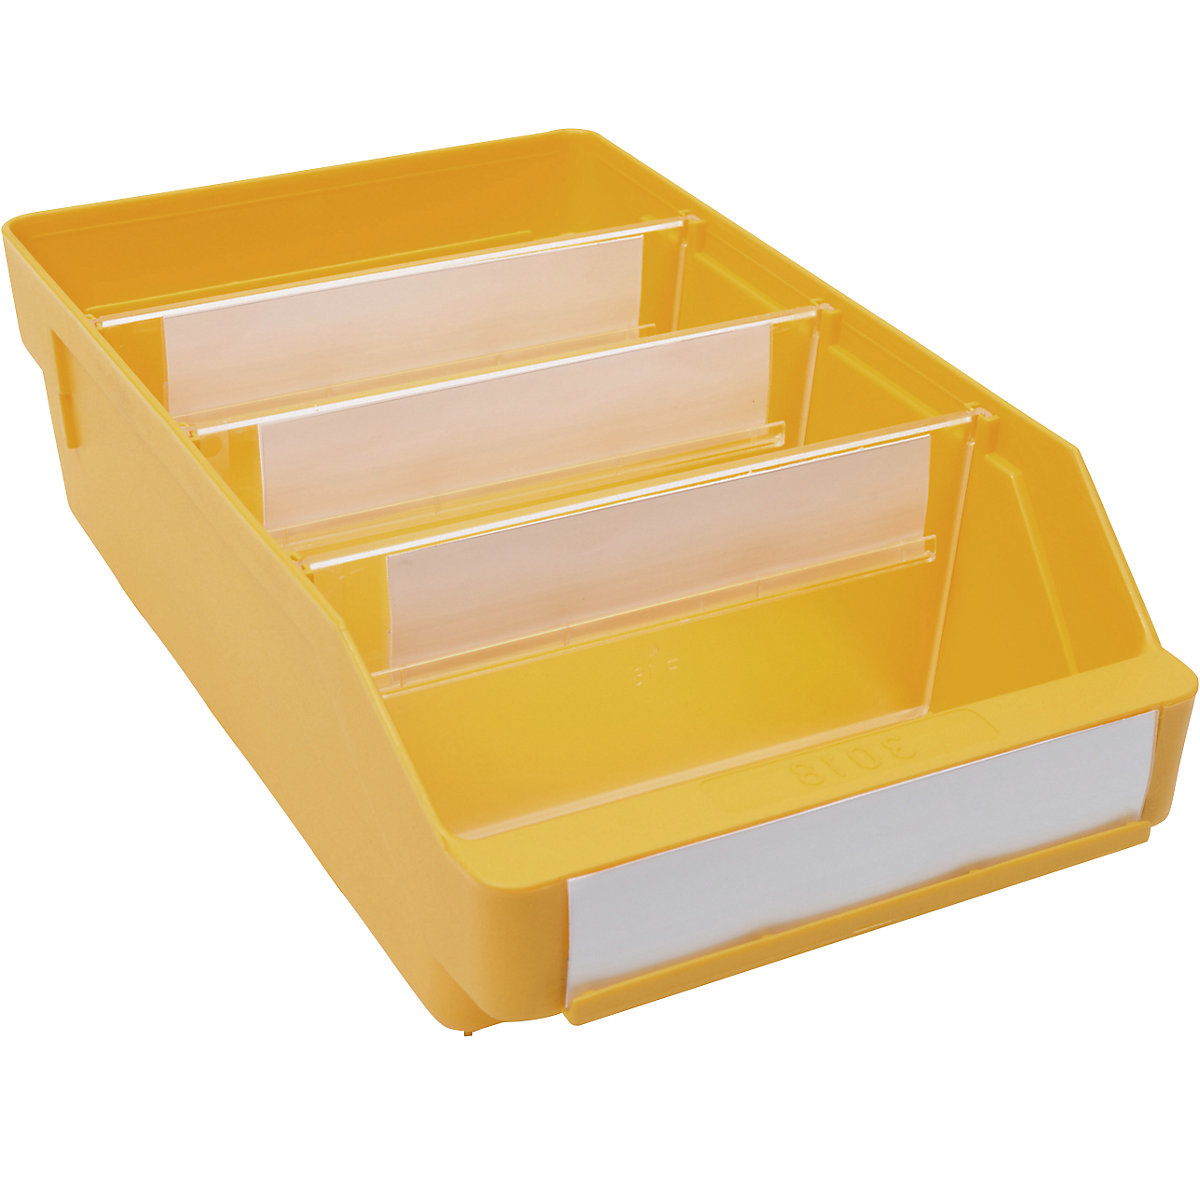 Regalkasten aus hochschlagfestem Polypropylen STEMO, gelb, LxBxH 300 x 180 x 95 mm, VE 20 Stk-17